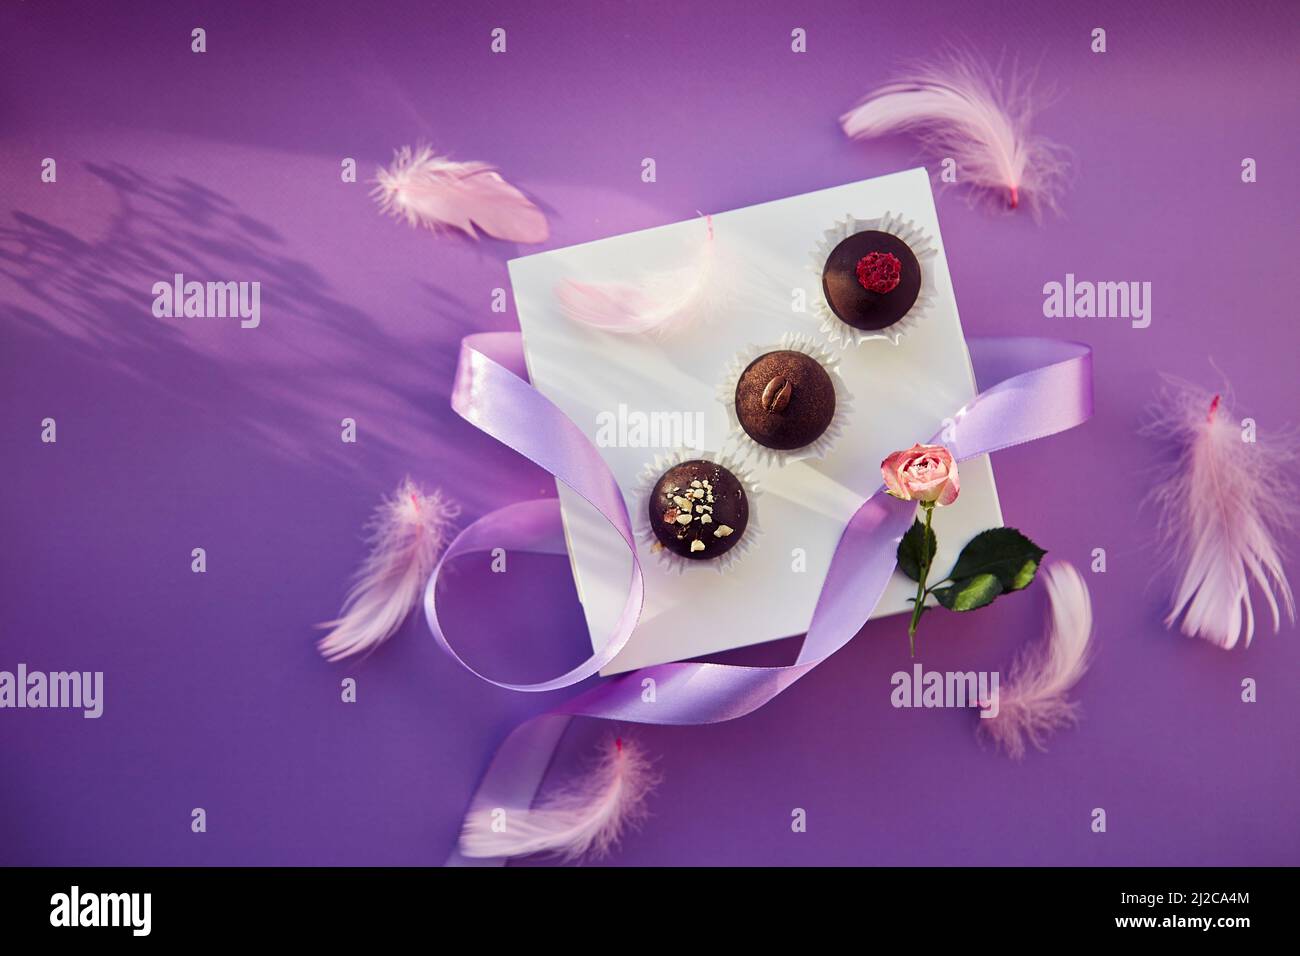 Caramelle al cioccolato festive. Delicate piume rosa con nastro viola. Sfondo con motivo di colore viola con ombre. Foto Stock